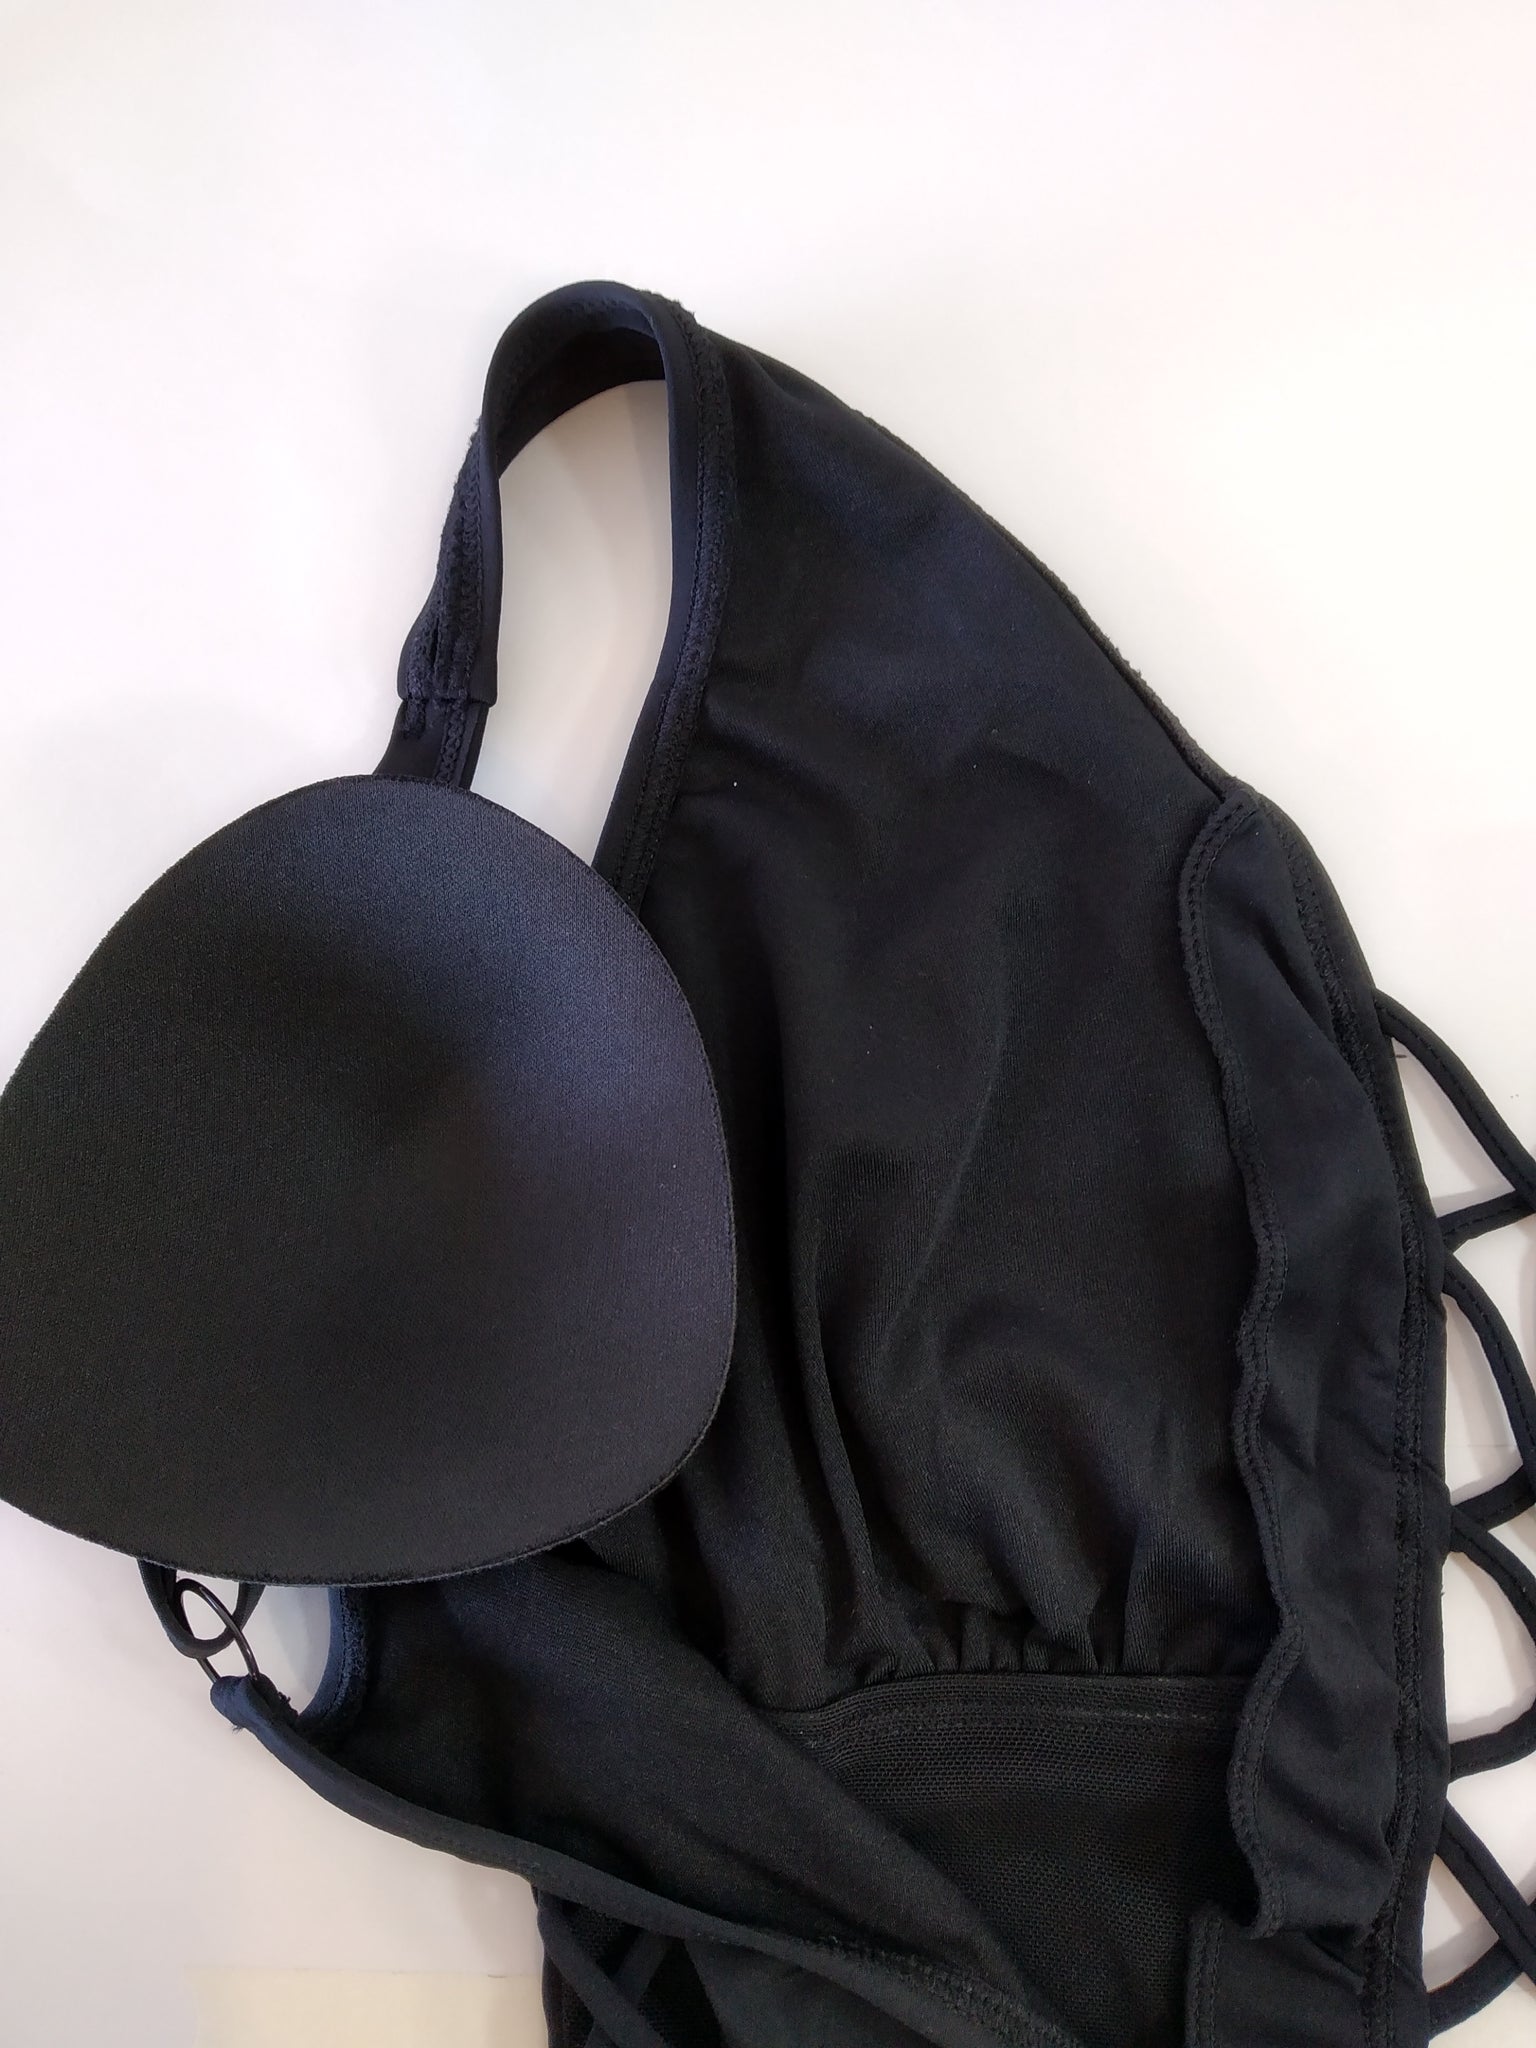 sexy black swimsuit with deep neckline-maillot de bain noir sexy decolette profond,traje de baño negro sexy con escote profundo